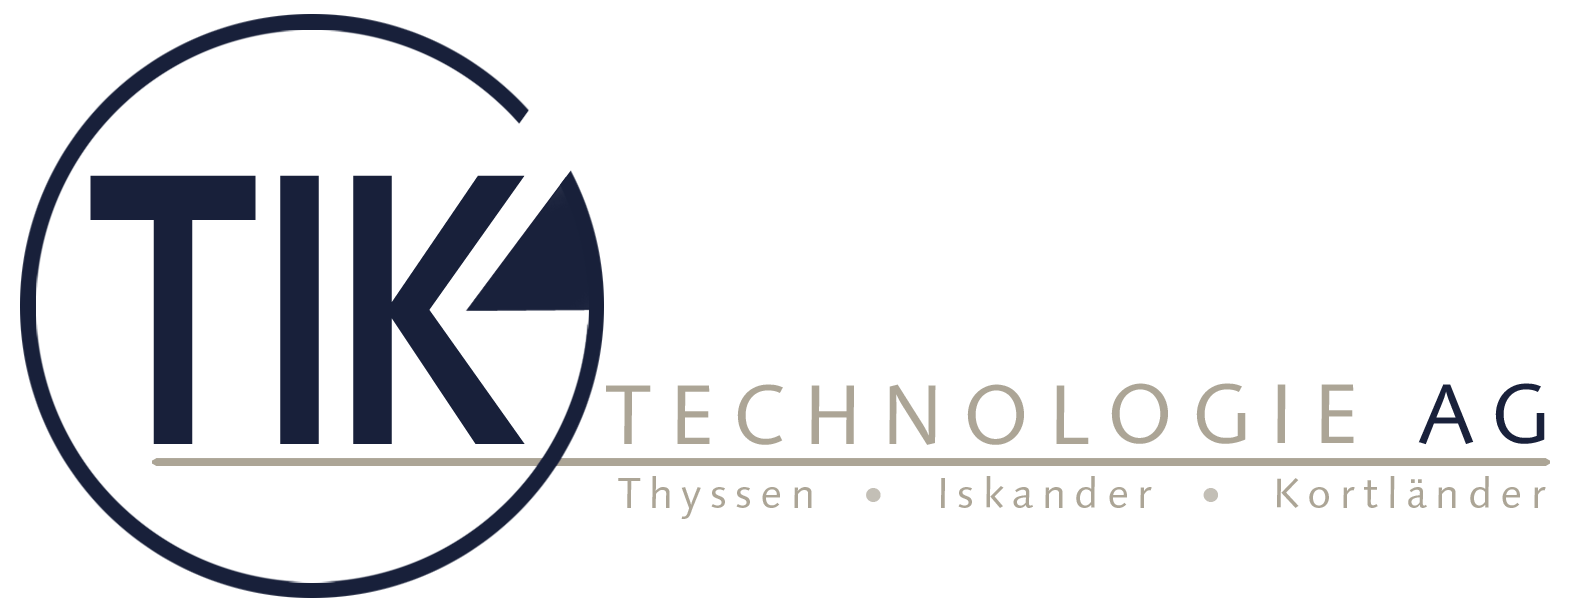 TIK-Technologie AG